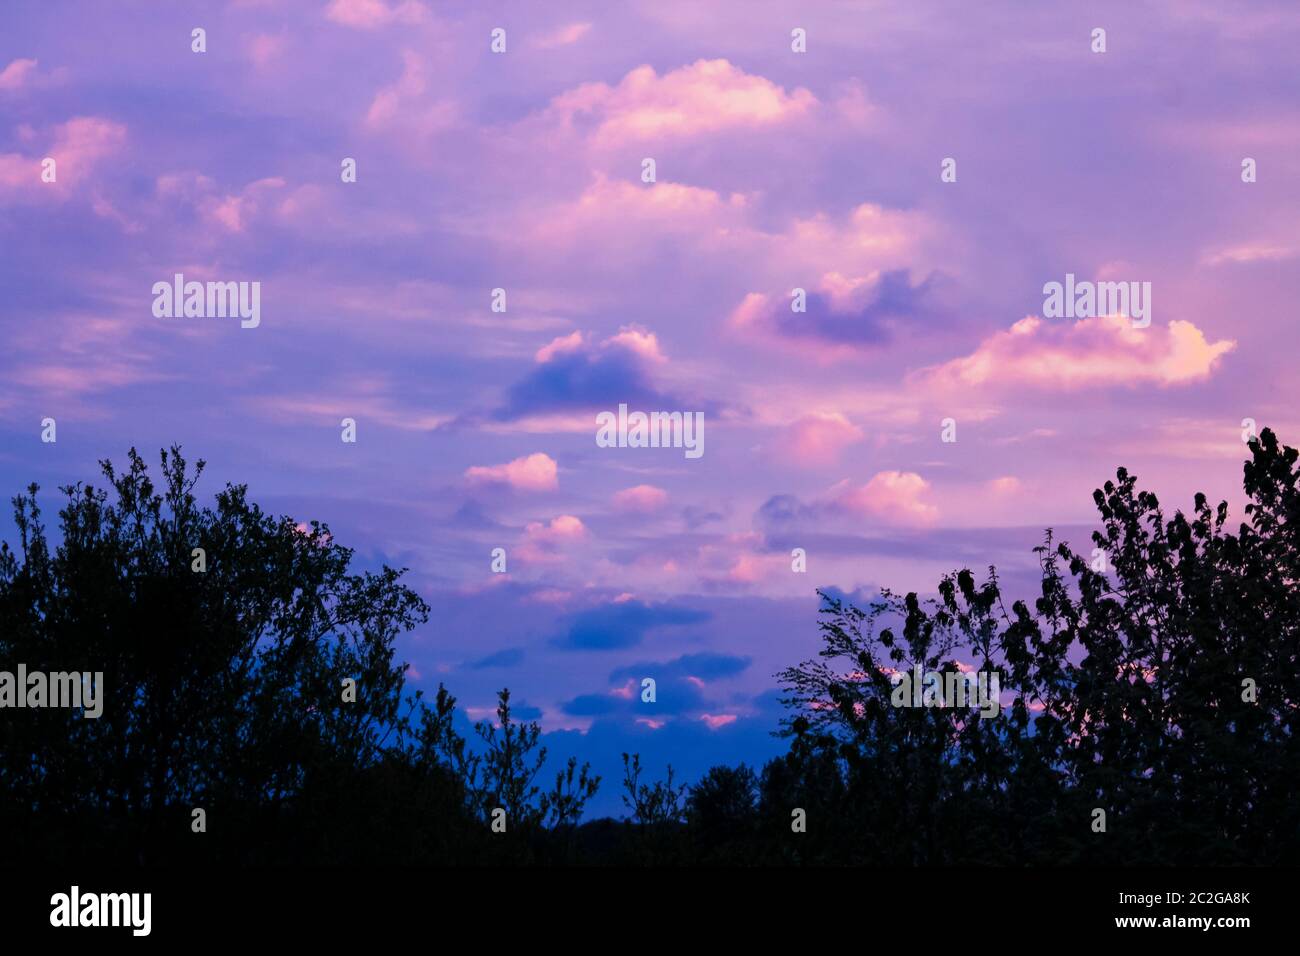 Unglaublich schöne Wolkenformationen und Farben in den Himmel, Sonnenuntergang hinter Bäumen. Stockfoto